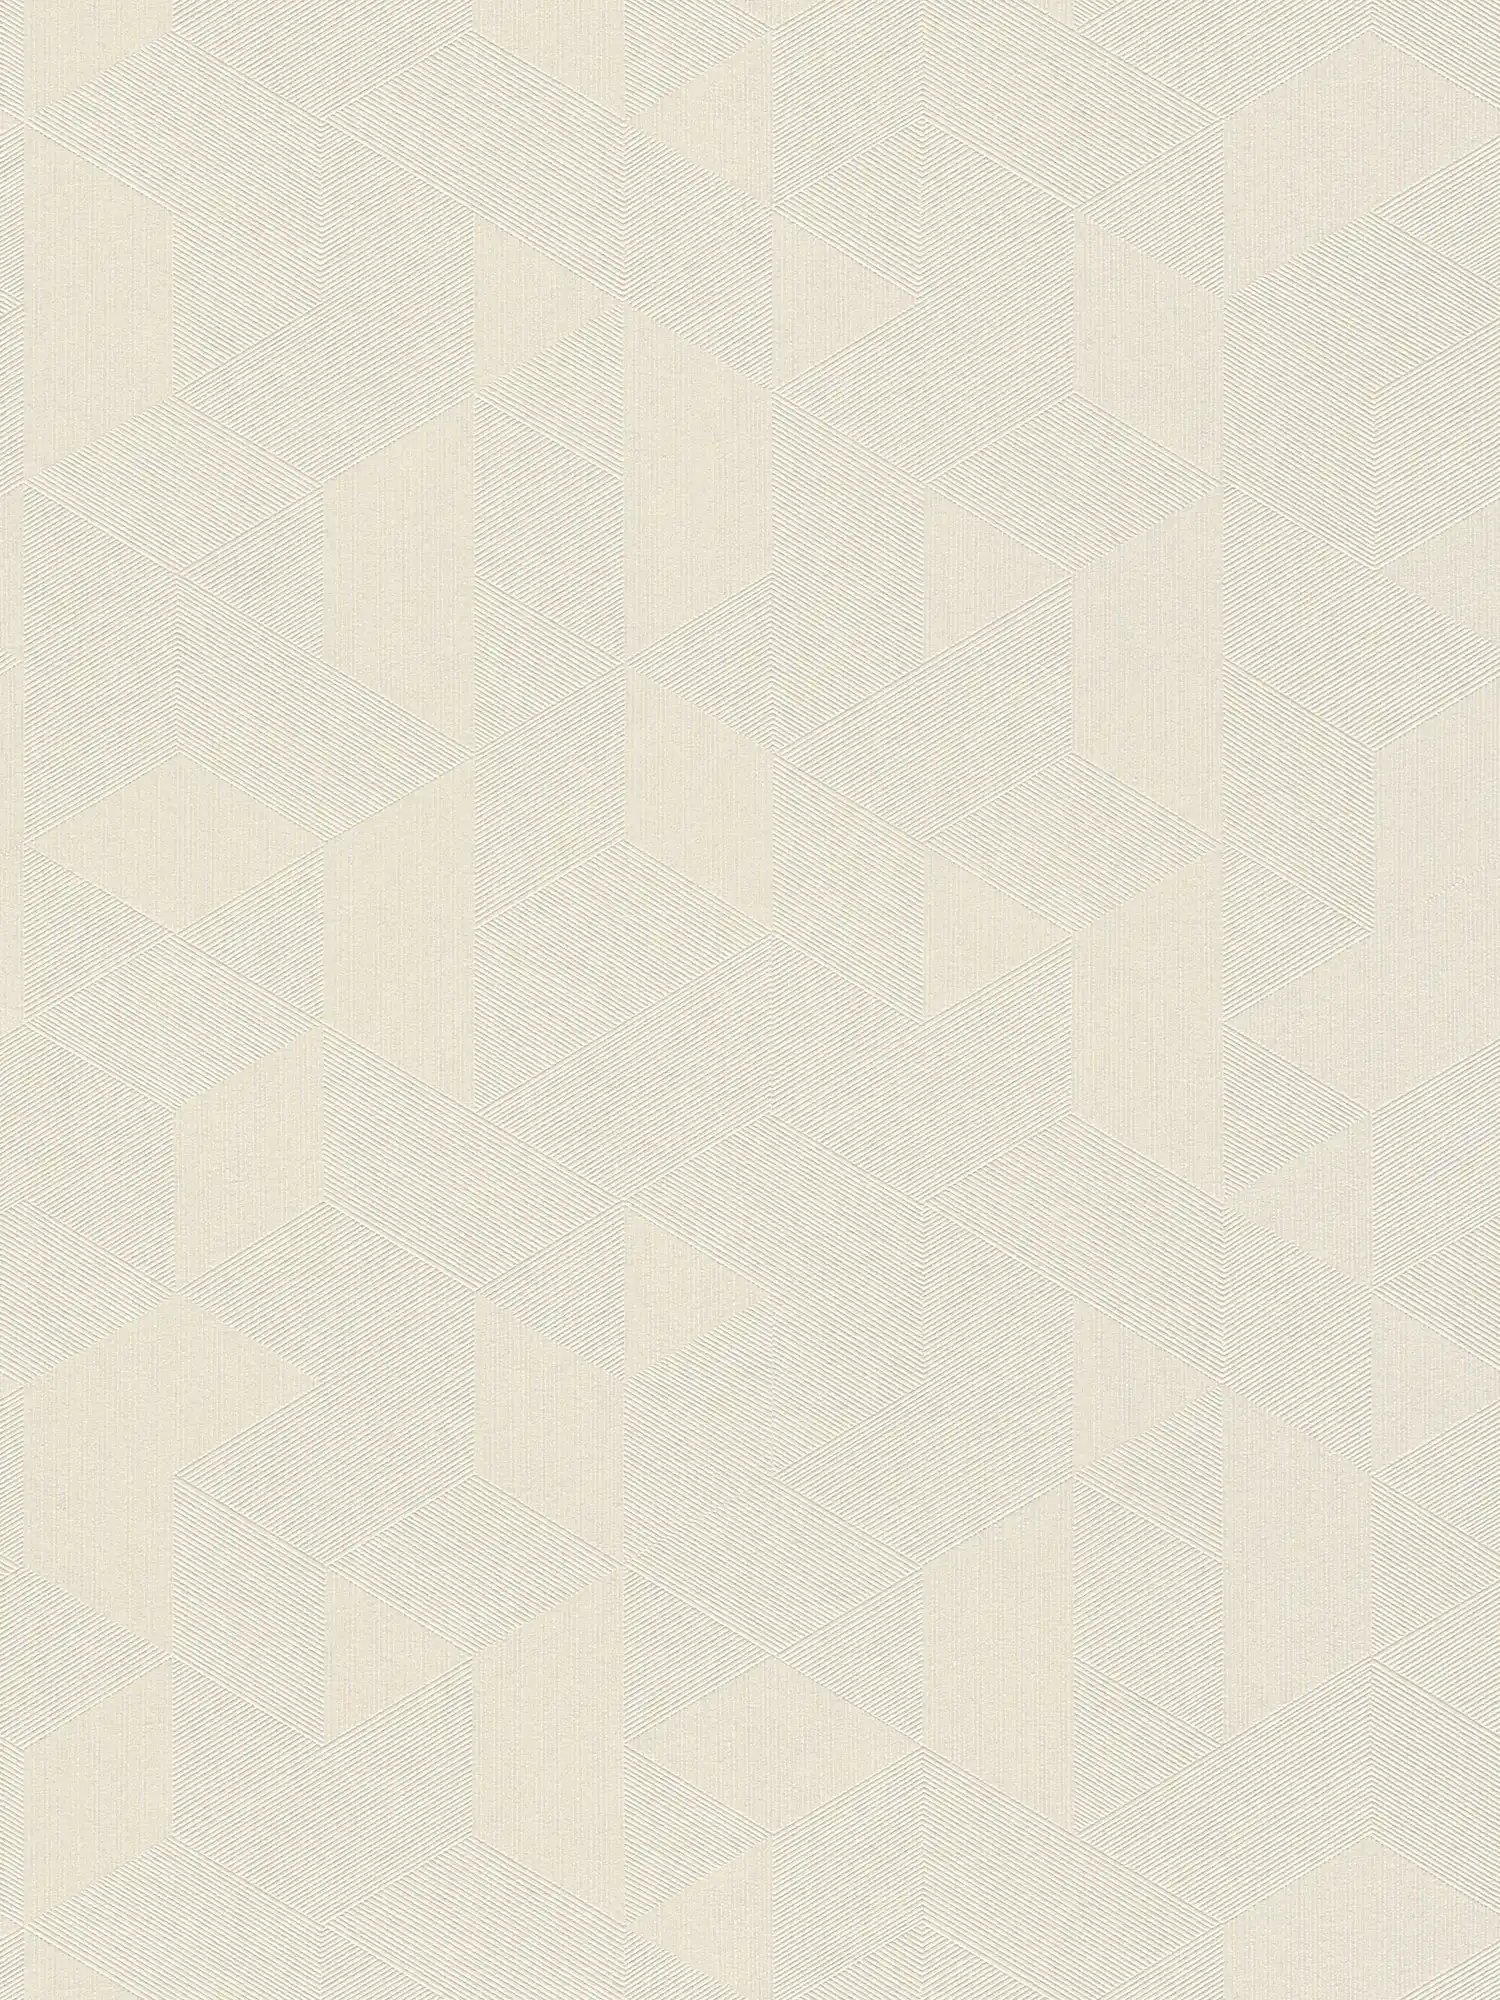 Cremeweise Tapete mit Ton-in-Ton Muster & Schimmer-Effekt – Weiß
